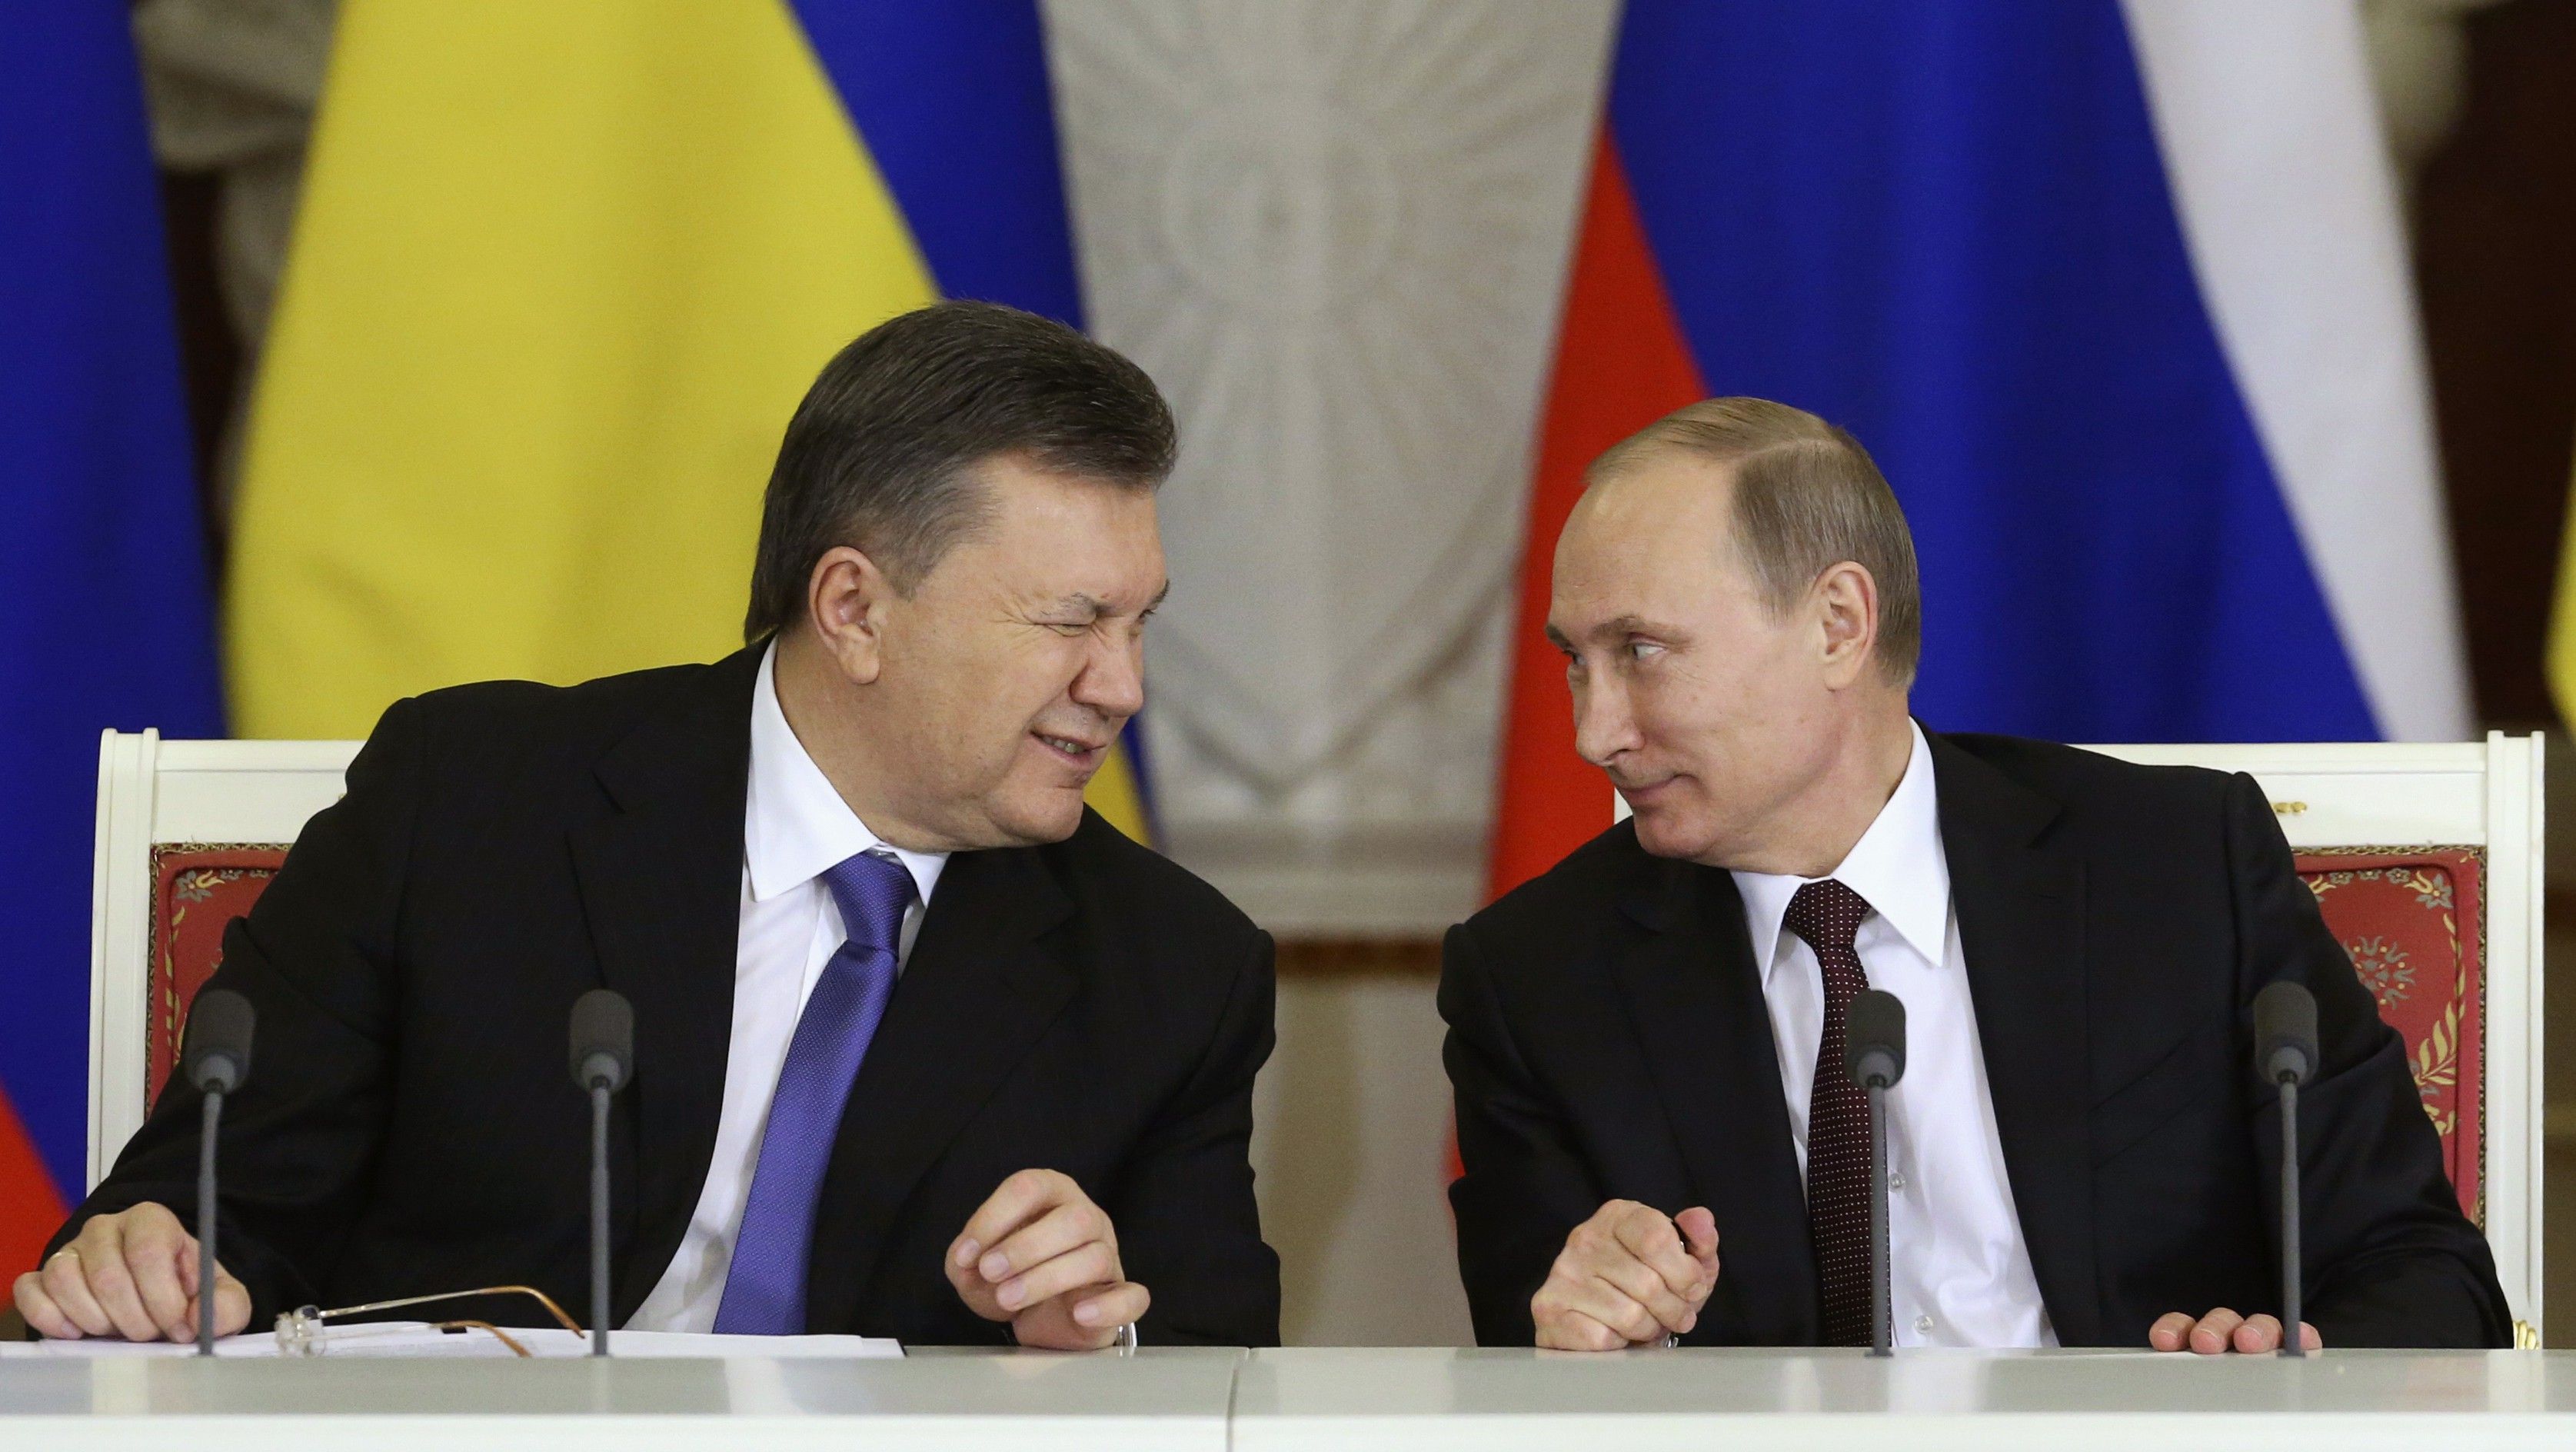 Fostul președinte de la Kiev, Viktor Ianukovyci, mizează pe sprijinul liderului rus Vladimir Putin pentru a reveni în Ucraina